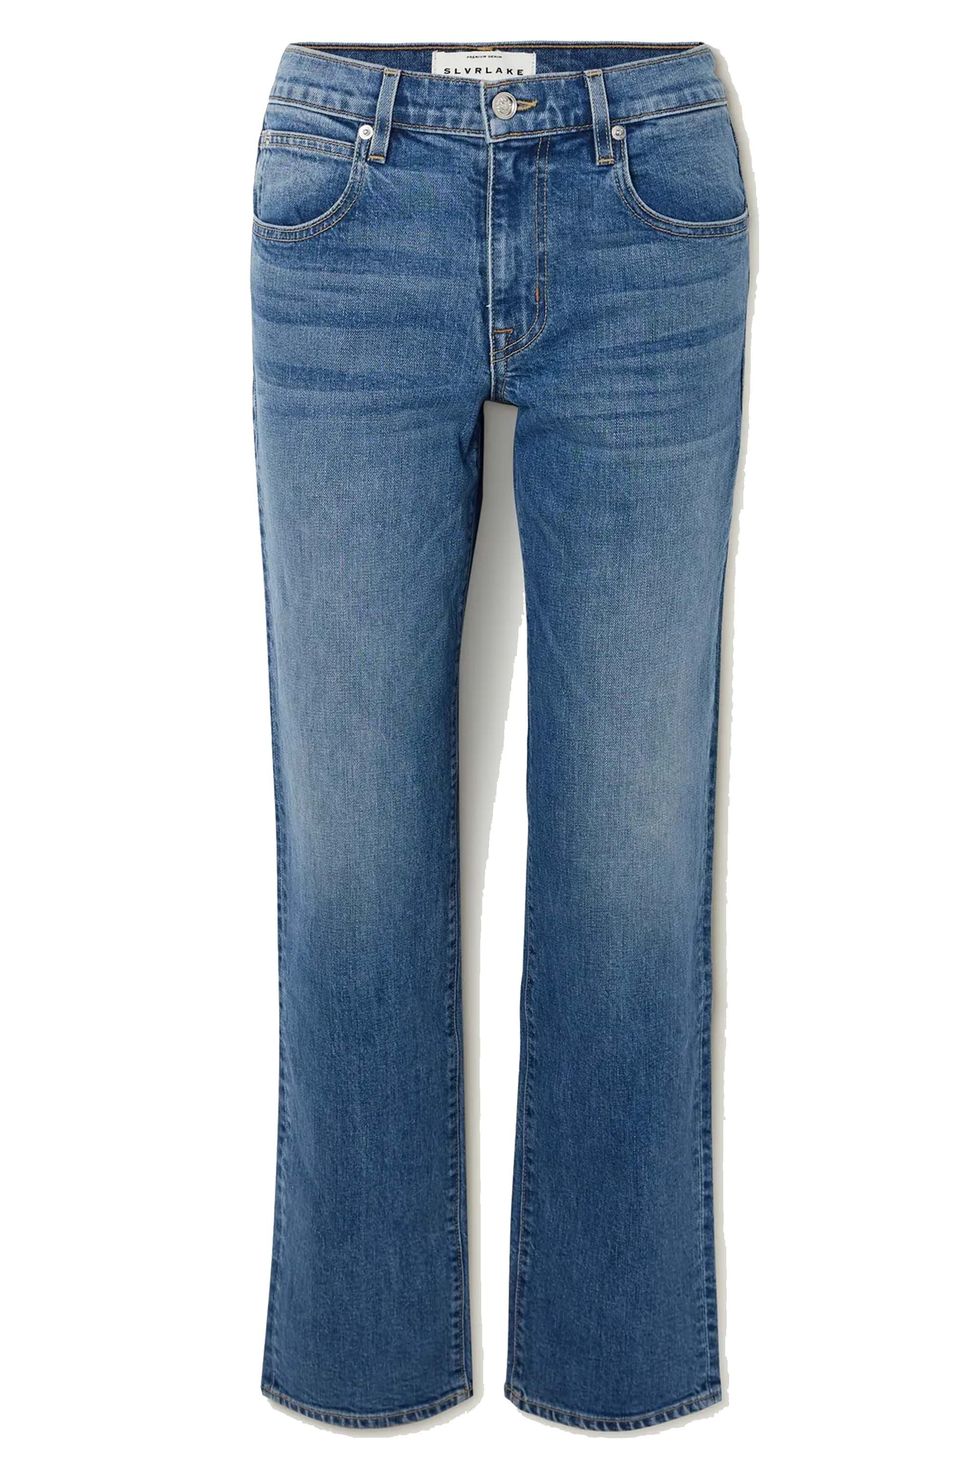 джинсы с низкой посадкой